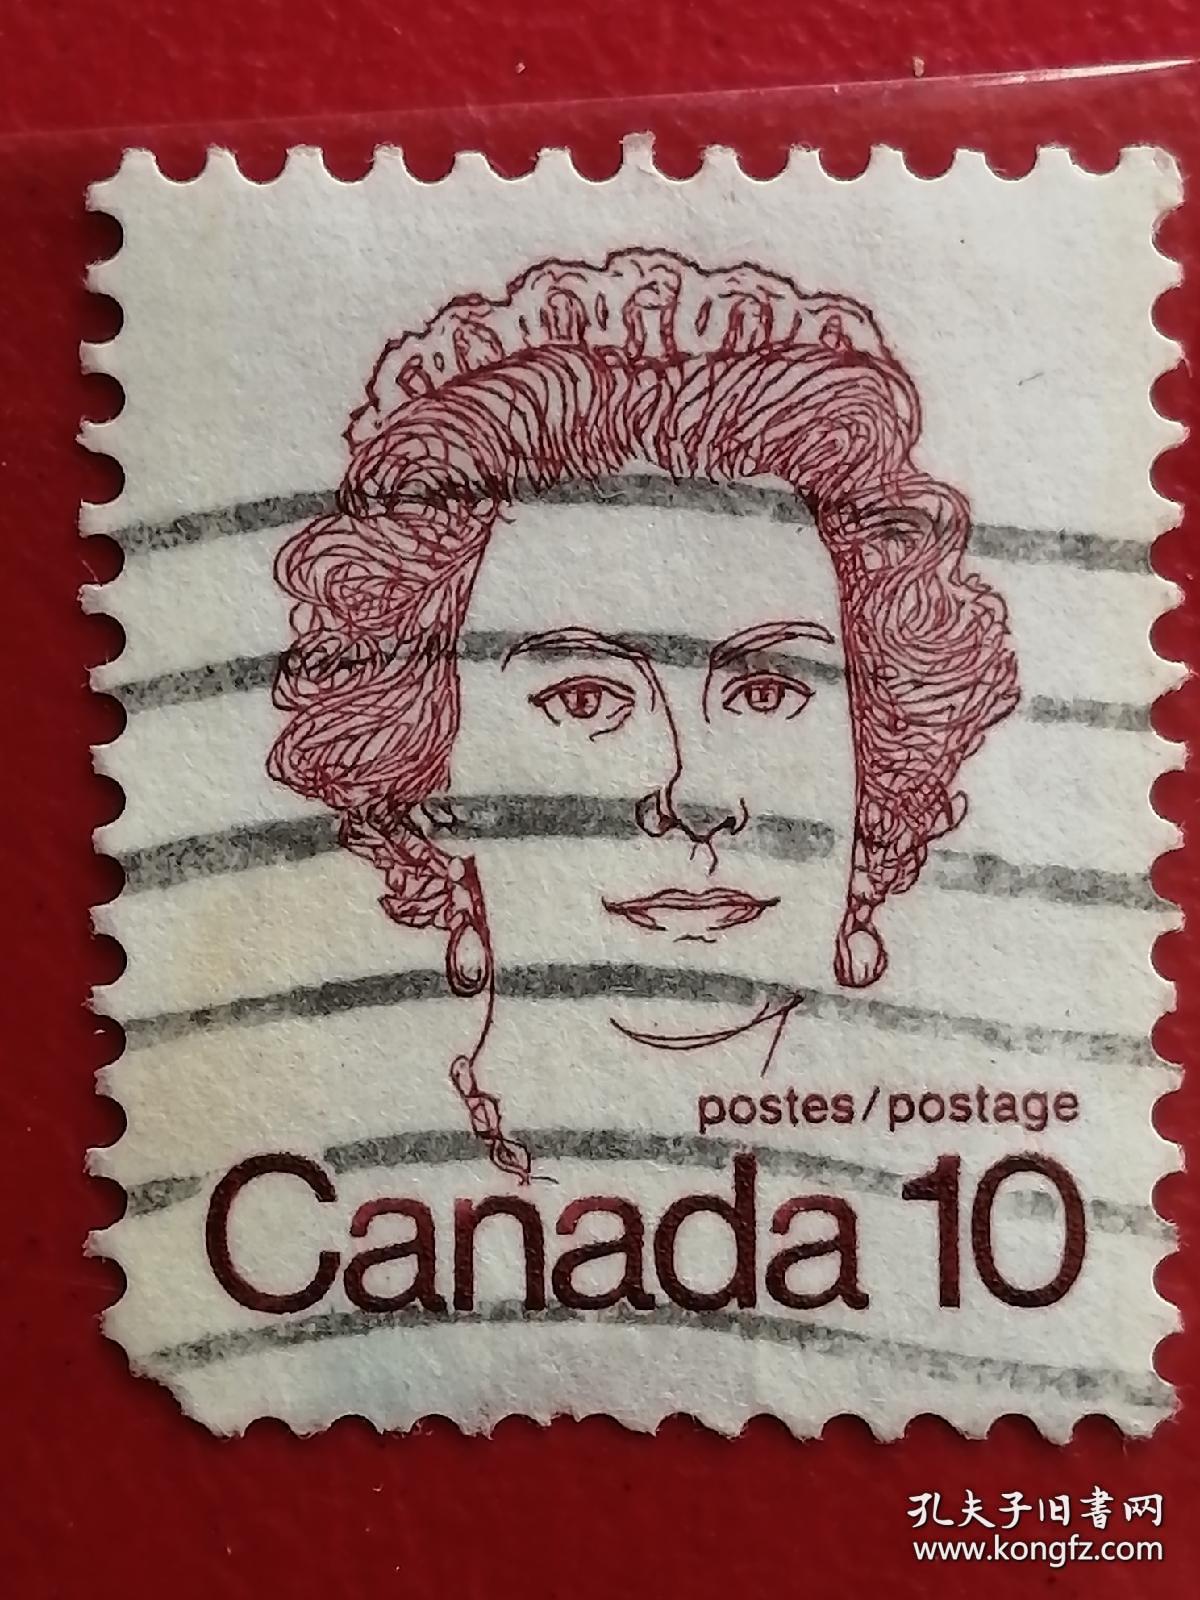 加拿大邮票 1972年-1976年 名人 英国女王伊丽莎白二世 9-9 信销 （1926年4月21日-2022年9月8日），曾任英国女王，英联邦元首、国会最高首领，为已故英王乔治六世的长女。全称为“大不列颠及北爱尔兰联合王国以及其他领土和属地的女王、英联邦元首、JD教的保护者伊丽莎白二世”。1952年2月6日即位，是英国在位时间最长的君主。